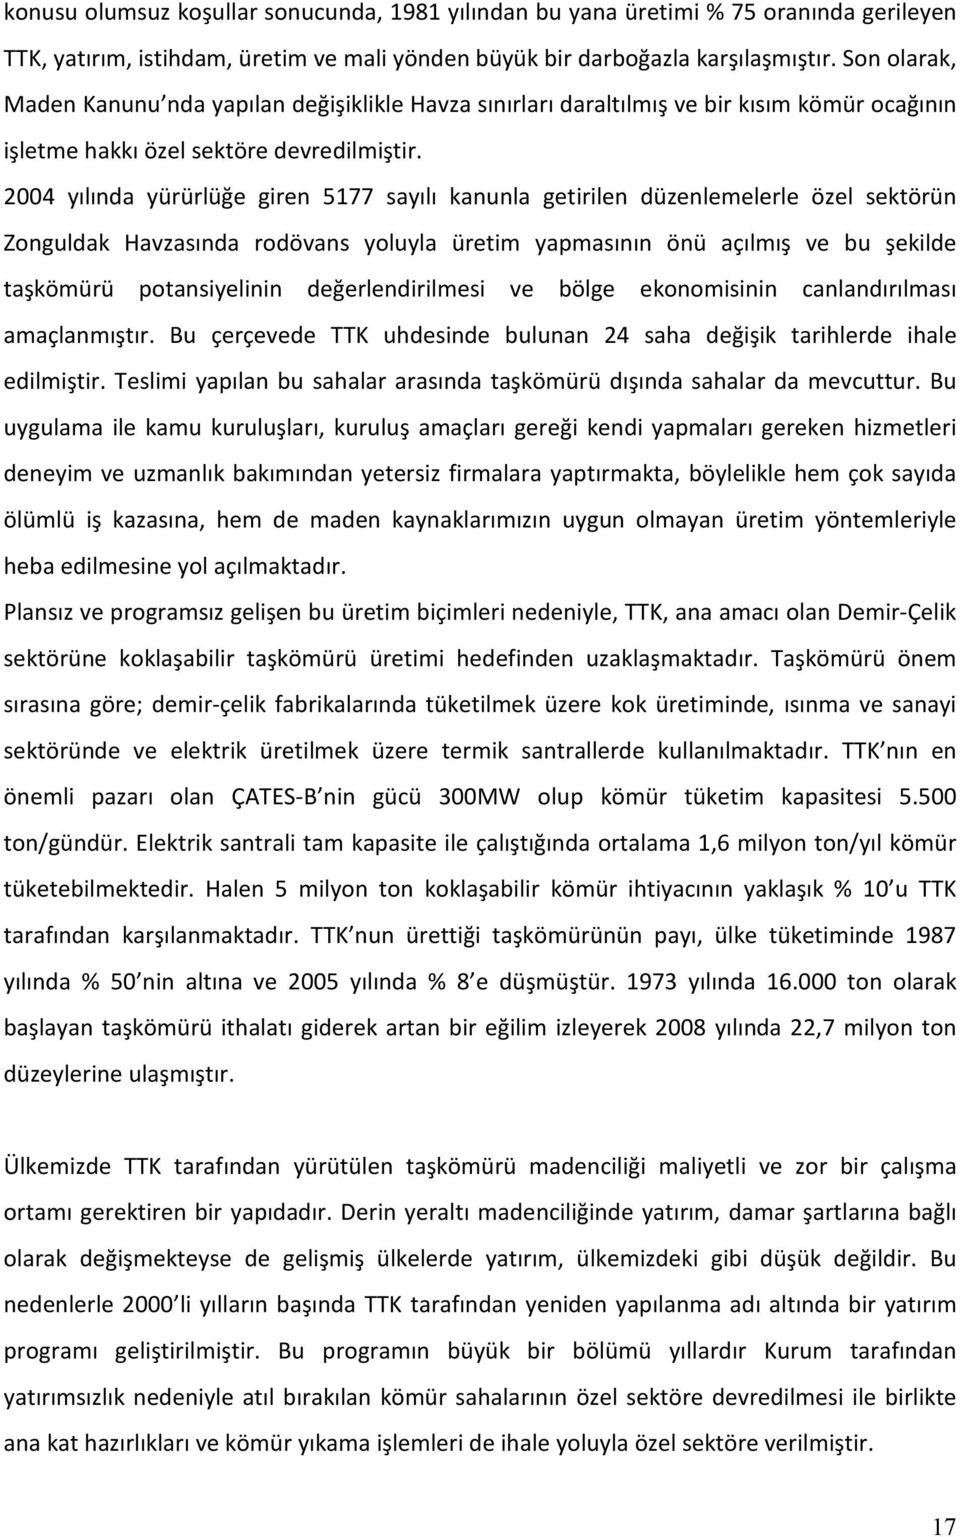 2004 yılında yürürlüğe giren 5177 sayılı kanunla getirilen düzenlemelerle özel sektörün Zonguldak Havzasında rodövans yoluyla üretim yapmasının önü açılmış ve bu şekilde taşkömürü potansiyelinin